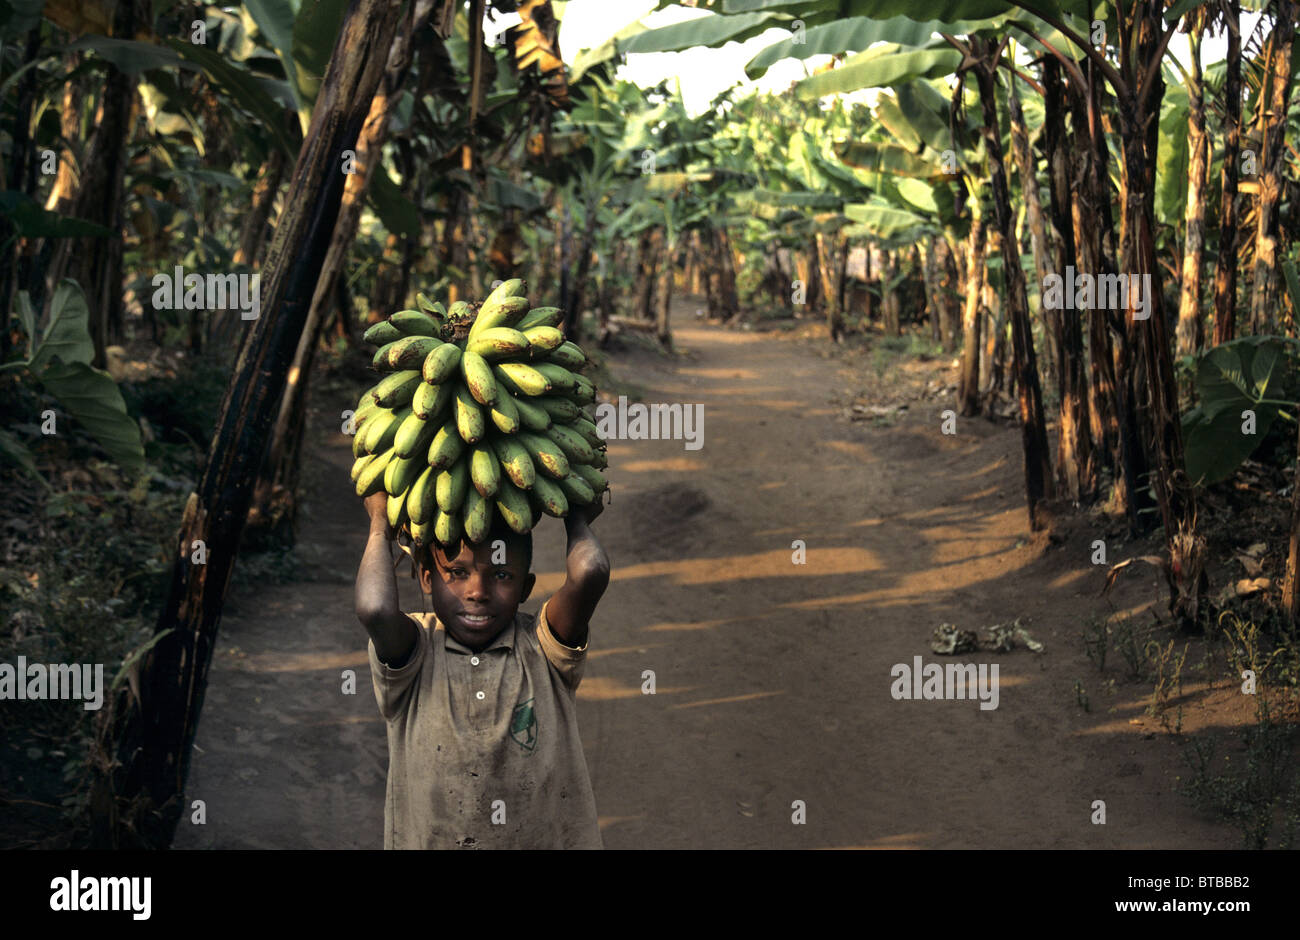 bananas in Uganda Stock Photo